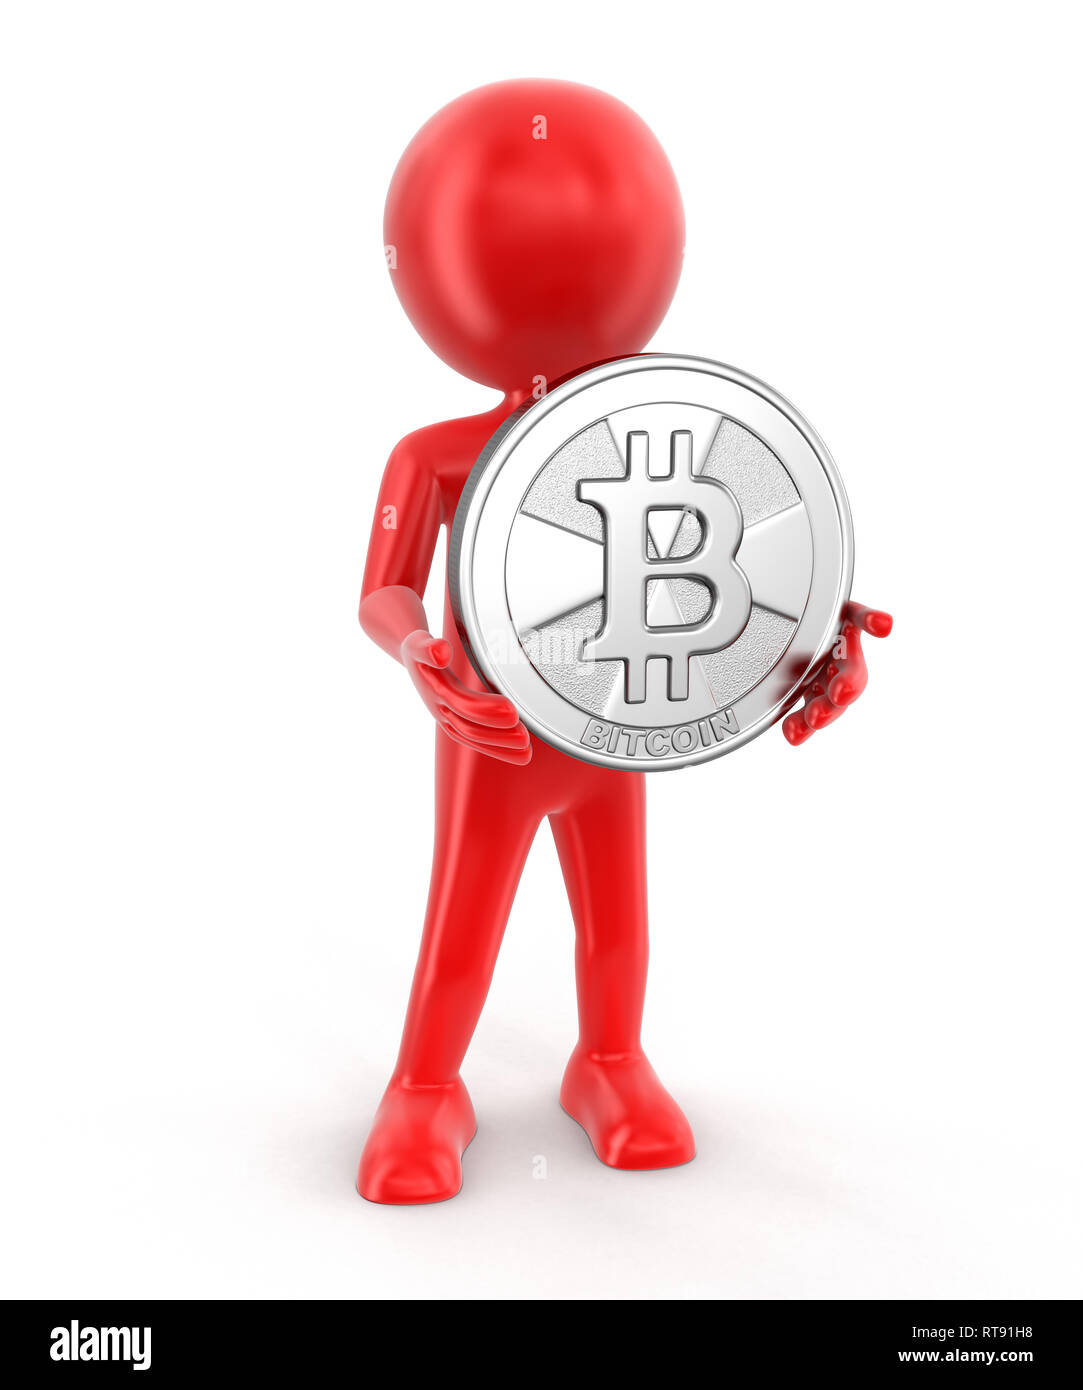 L'homme et de Bitcoin. Image avec clipping path Banque D'Images